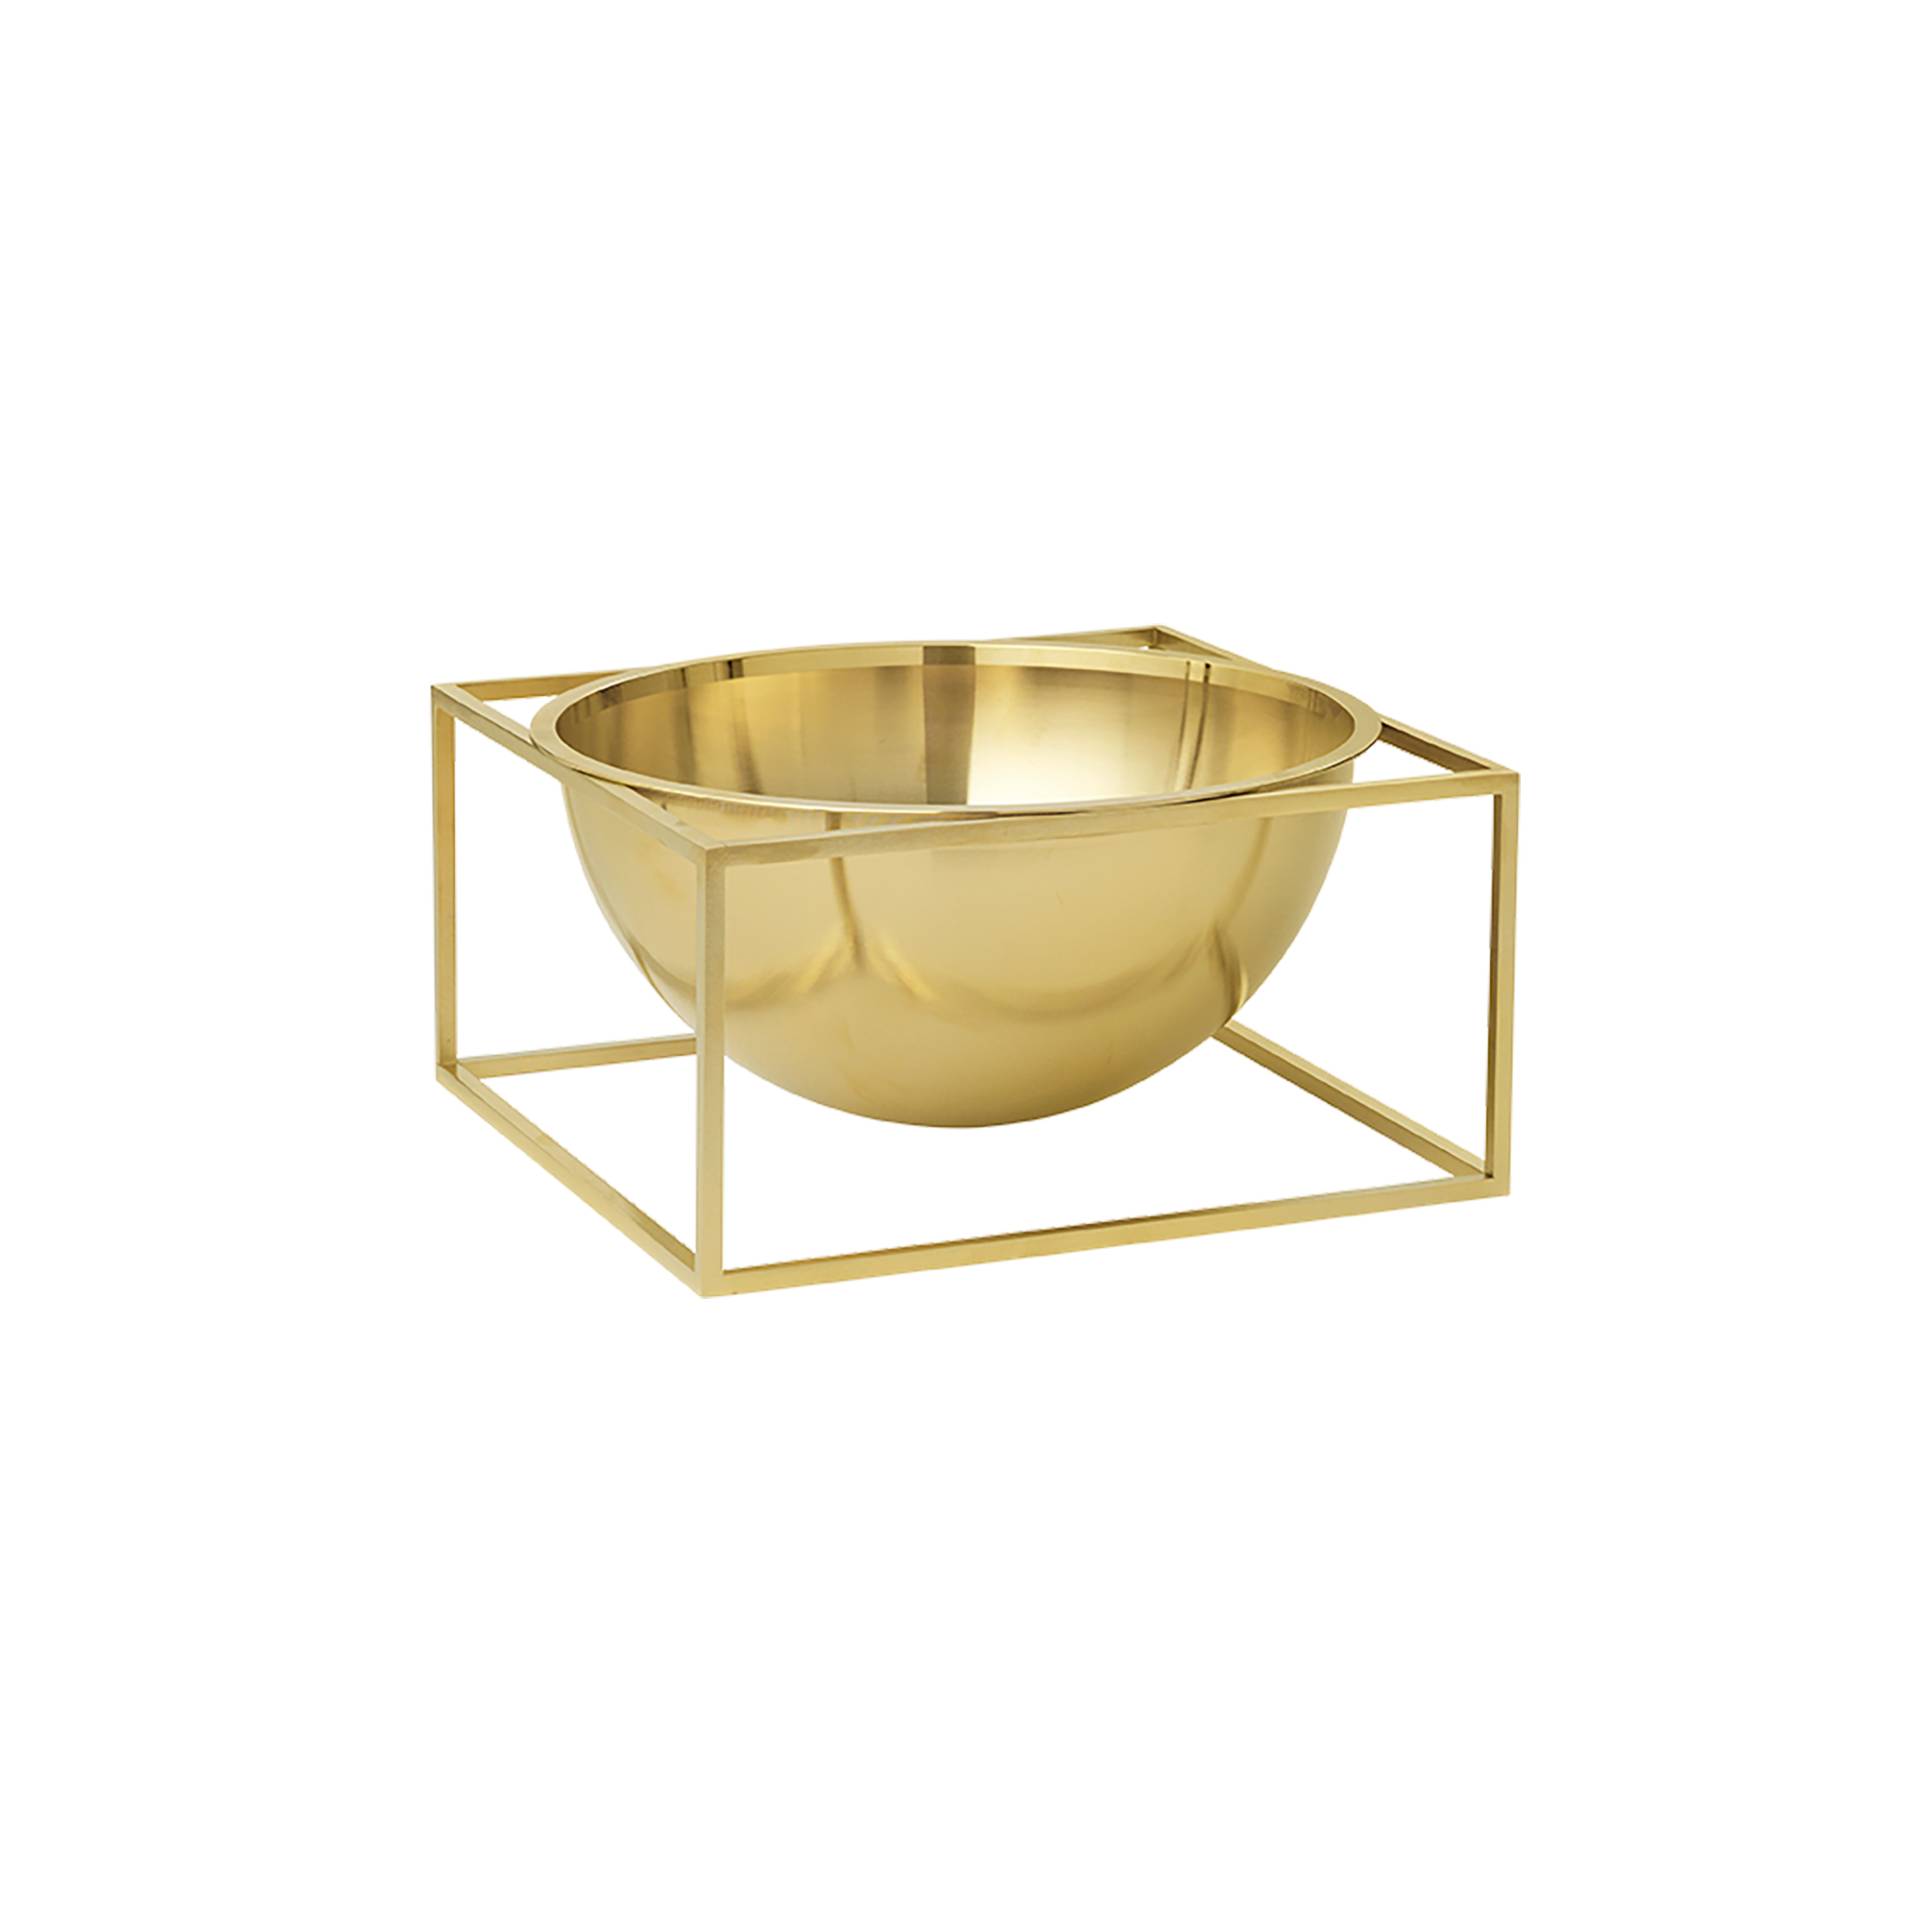 Audo - Kubus Bowl Centerpiece klein - gold/veredelt/LxBxH 14x14x7cm von Audo